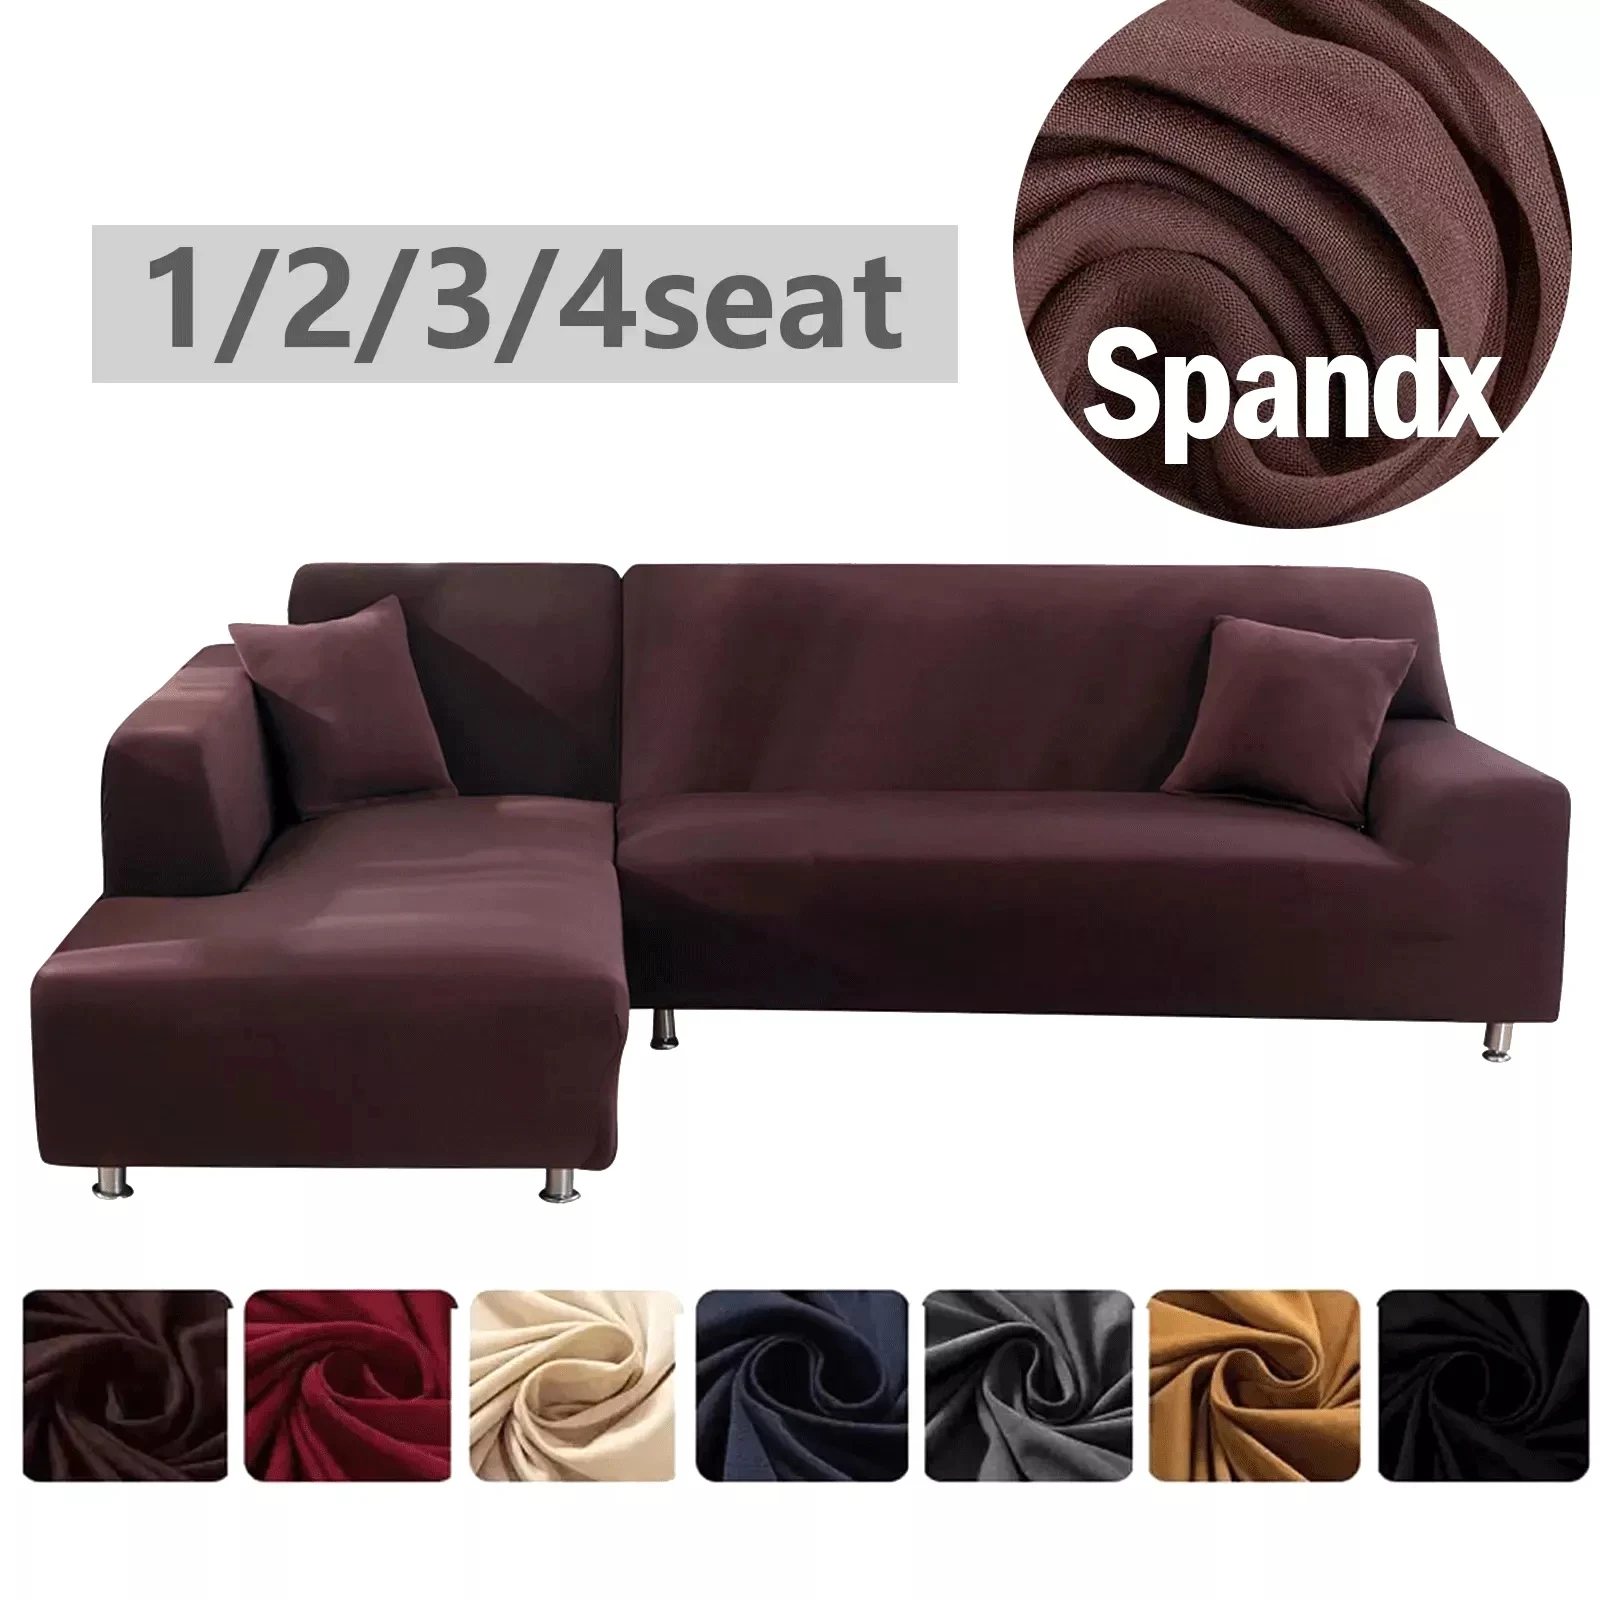 Penutup Sofa Elastis Tebal Spanx Warna Solid Penutup Bagian Universal Penutup Sofa Peregangan untuk Ruang Tamu1/2/3/4 tempat duduk - 4